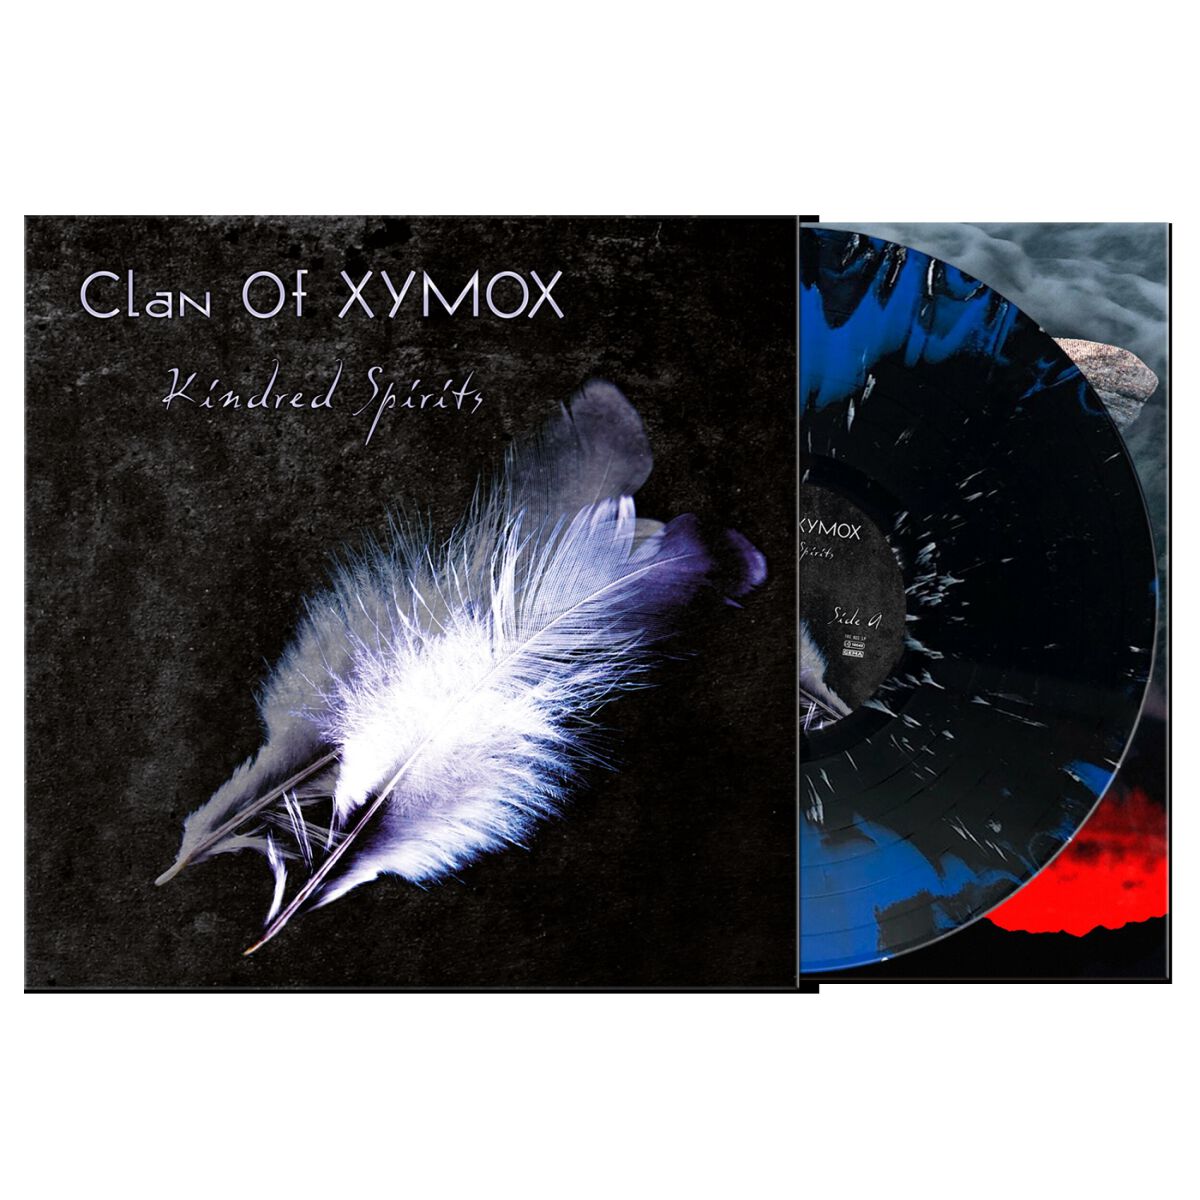 Kindred spiritis von Clan Of Xymox - LP (Coloured, Limited Edition, Standard)